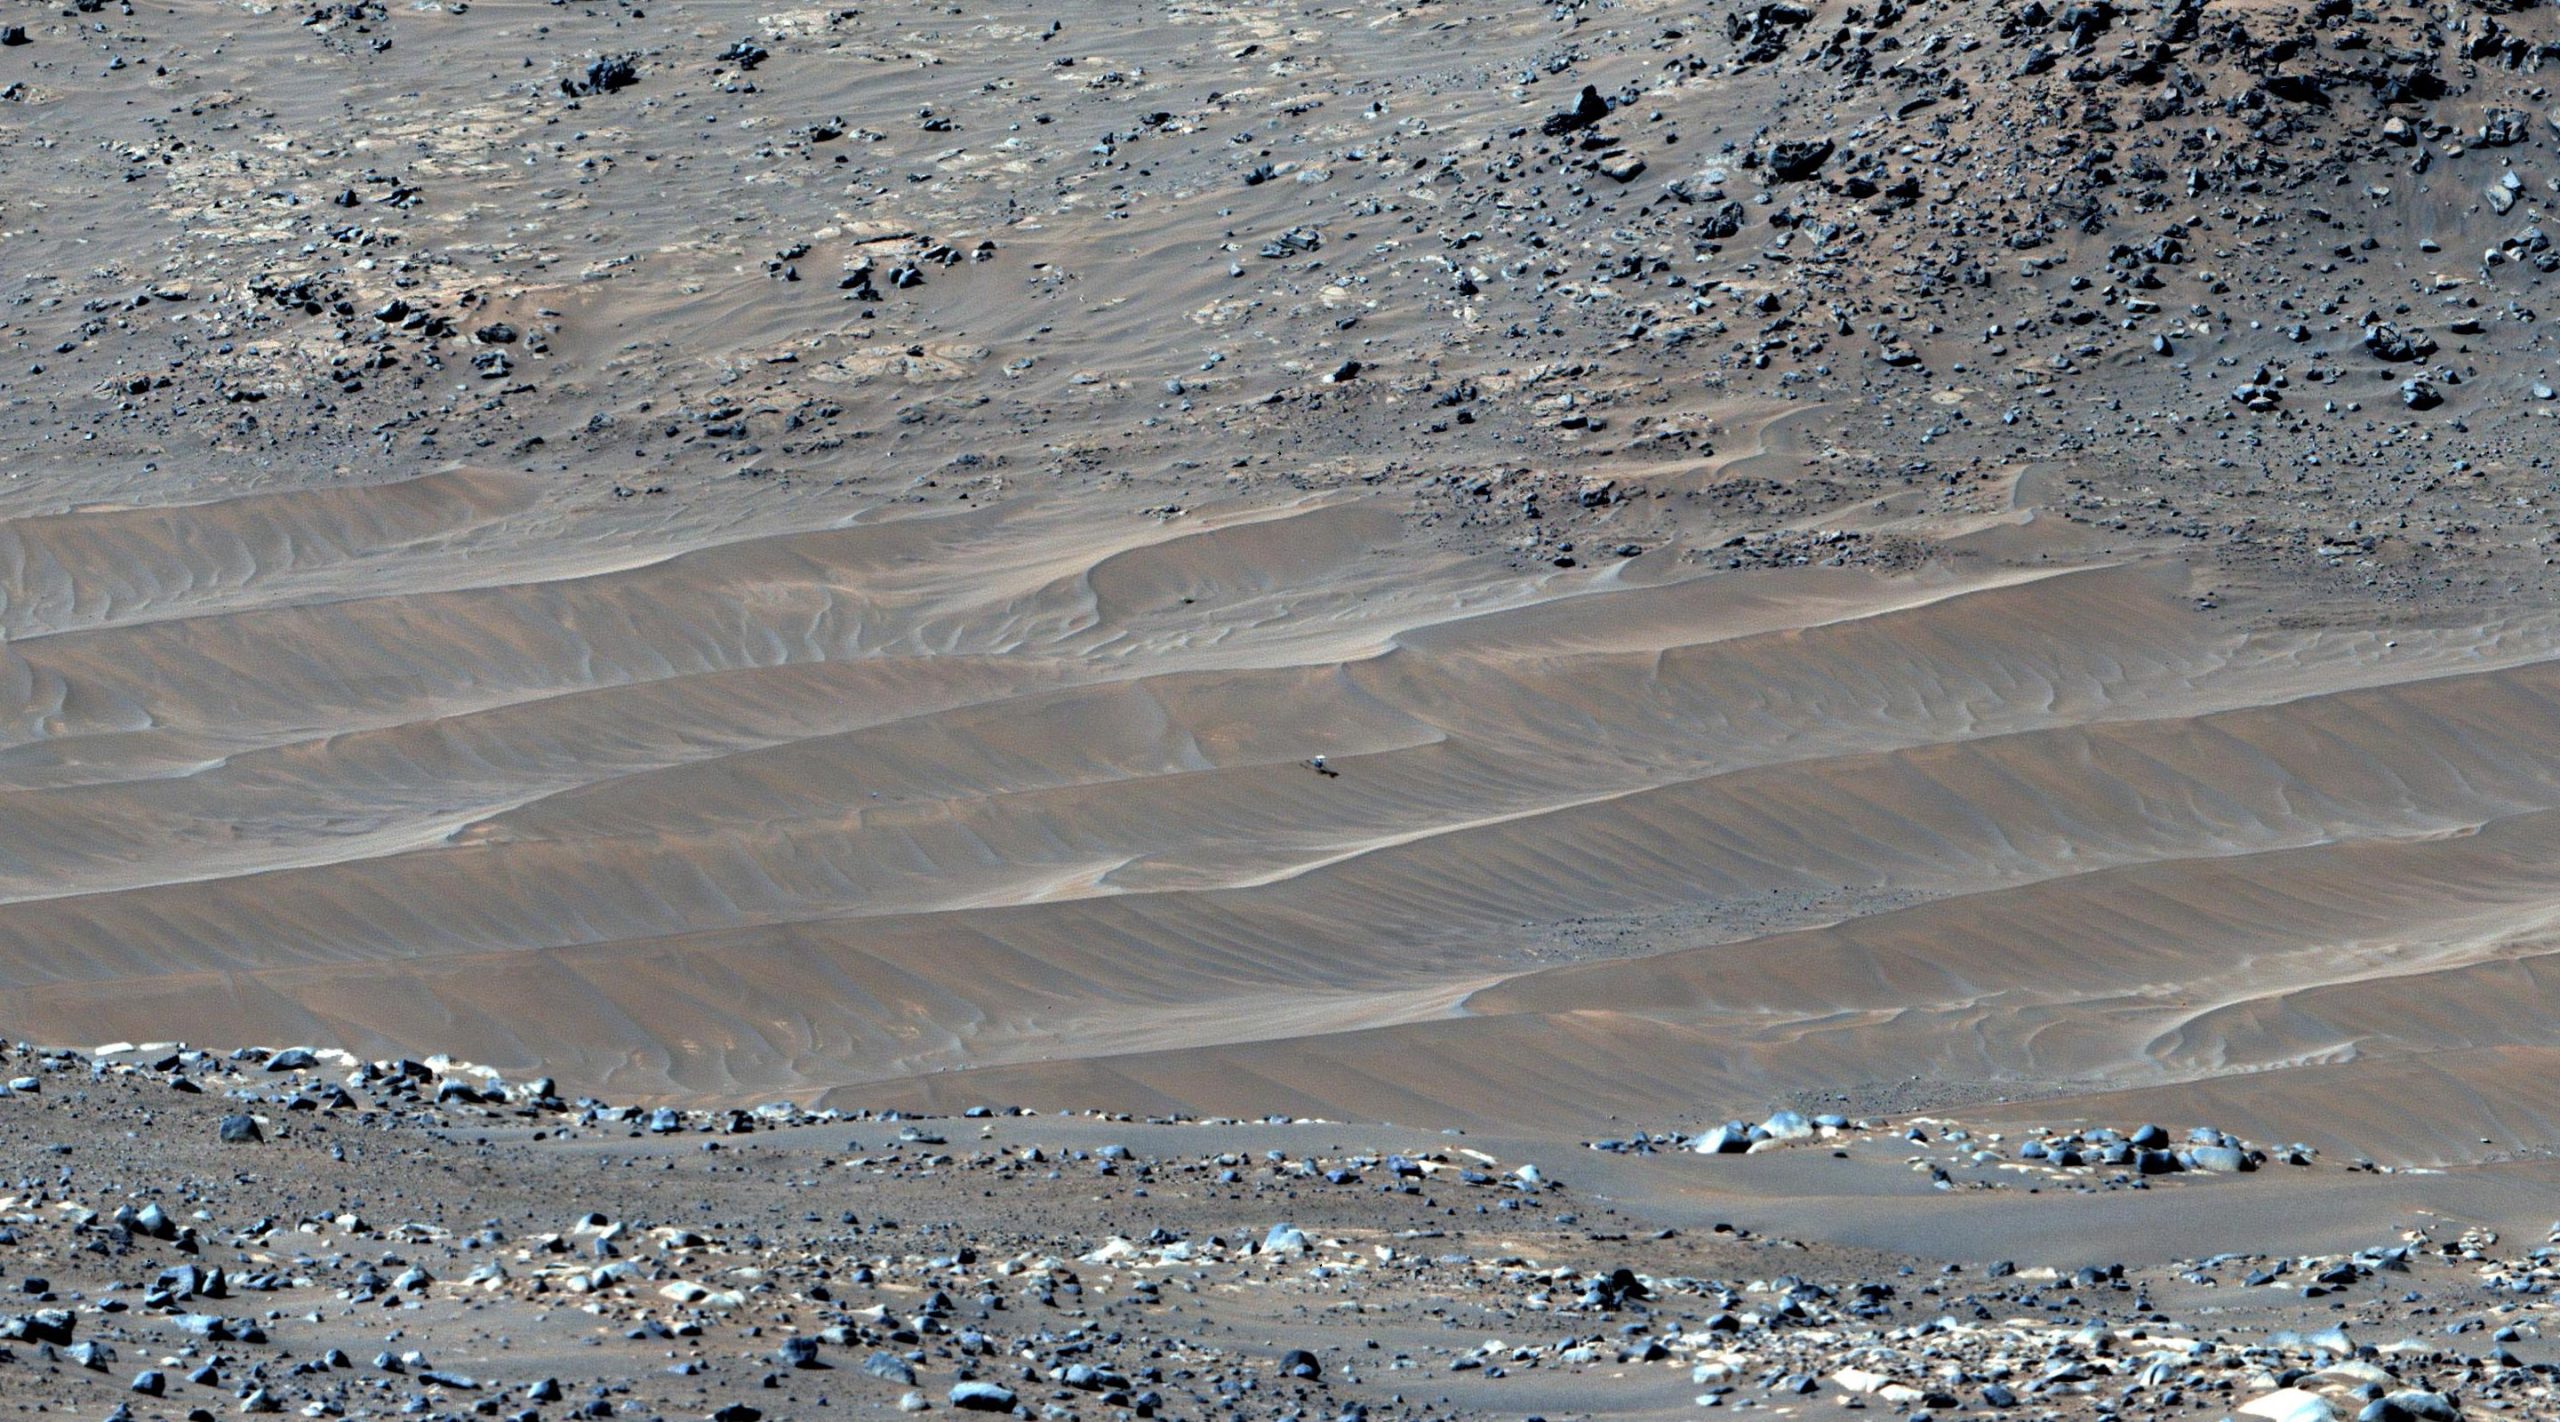 NASA'nın Perseverance Mars Rover'ı, Ingenuity helikopterinin son dinlenme yerinde olduğunu keşfetti